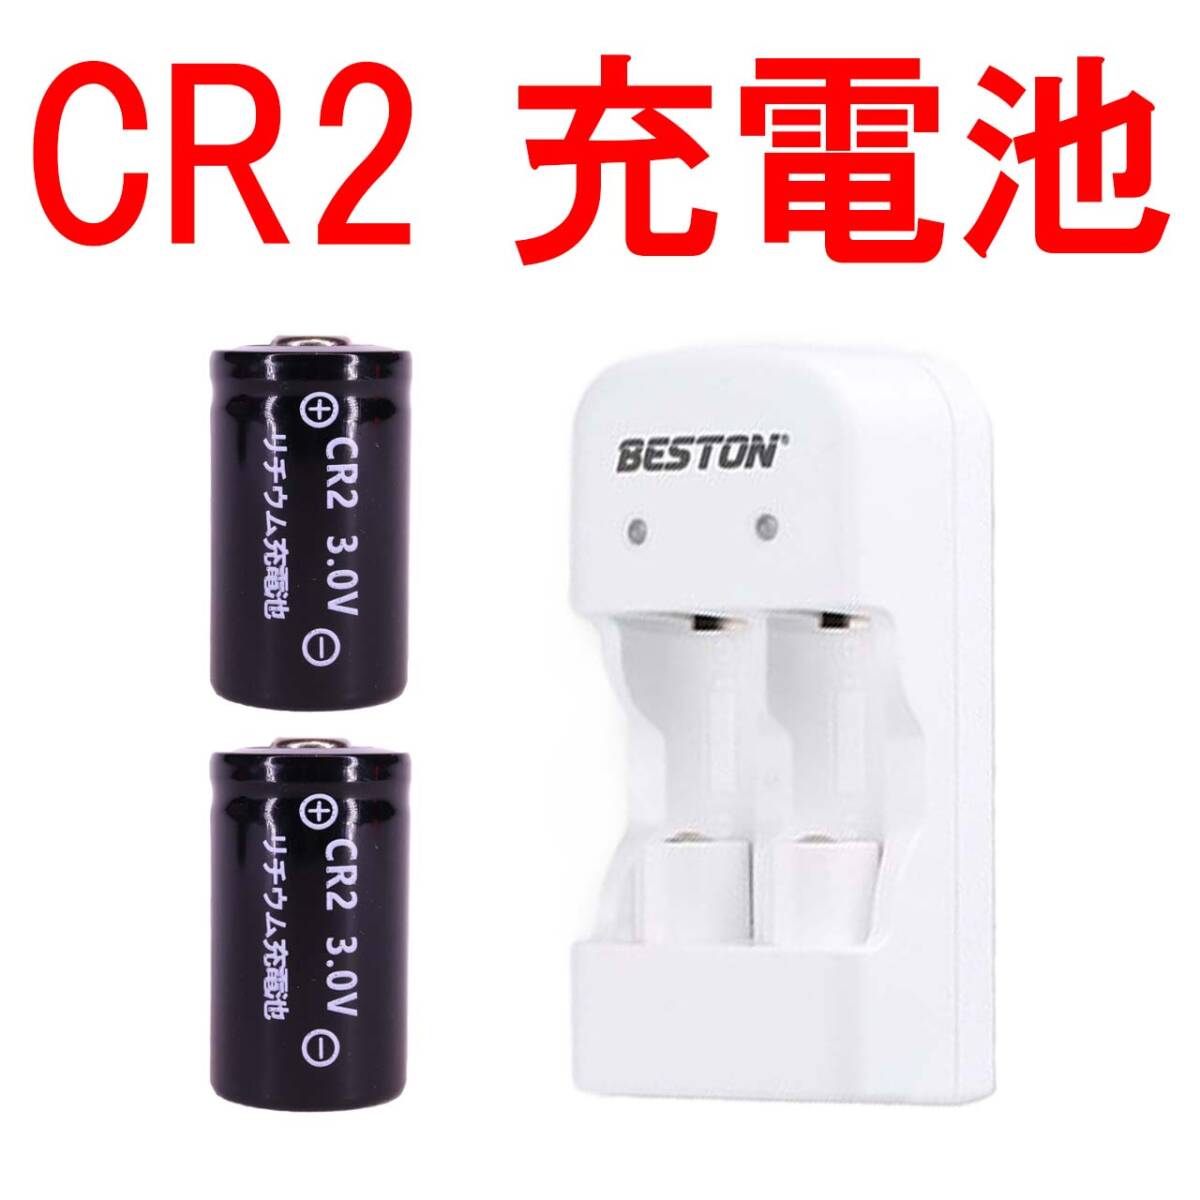 ② CR2 リチウムイオン充電池 switch bot スイッチボット カメラ バッテリー 充電式 CR2+充電器 03